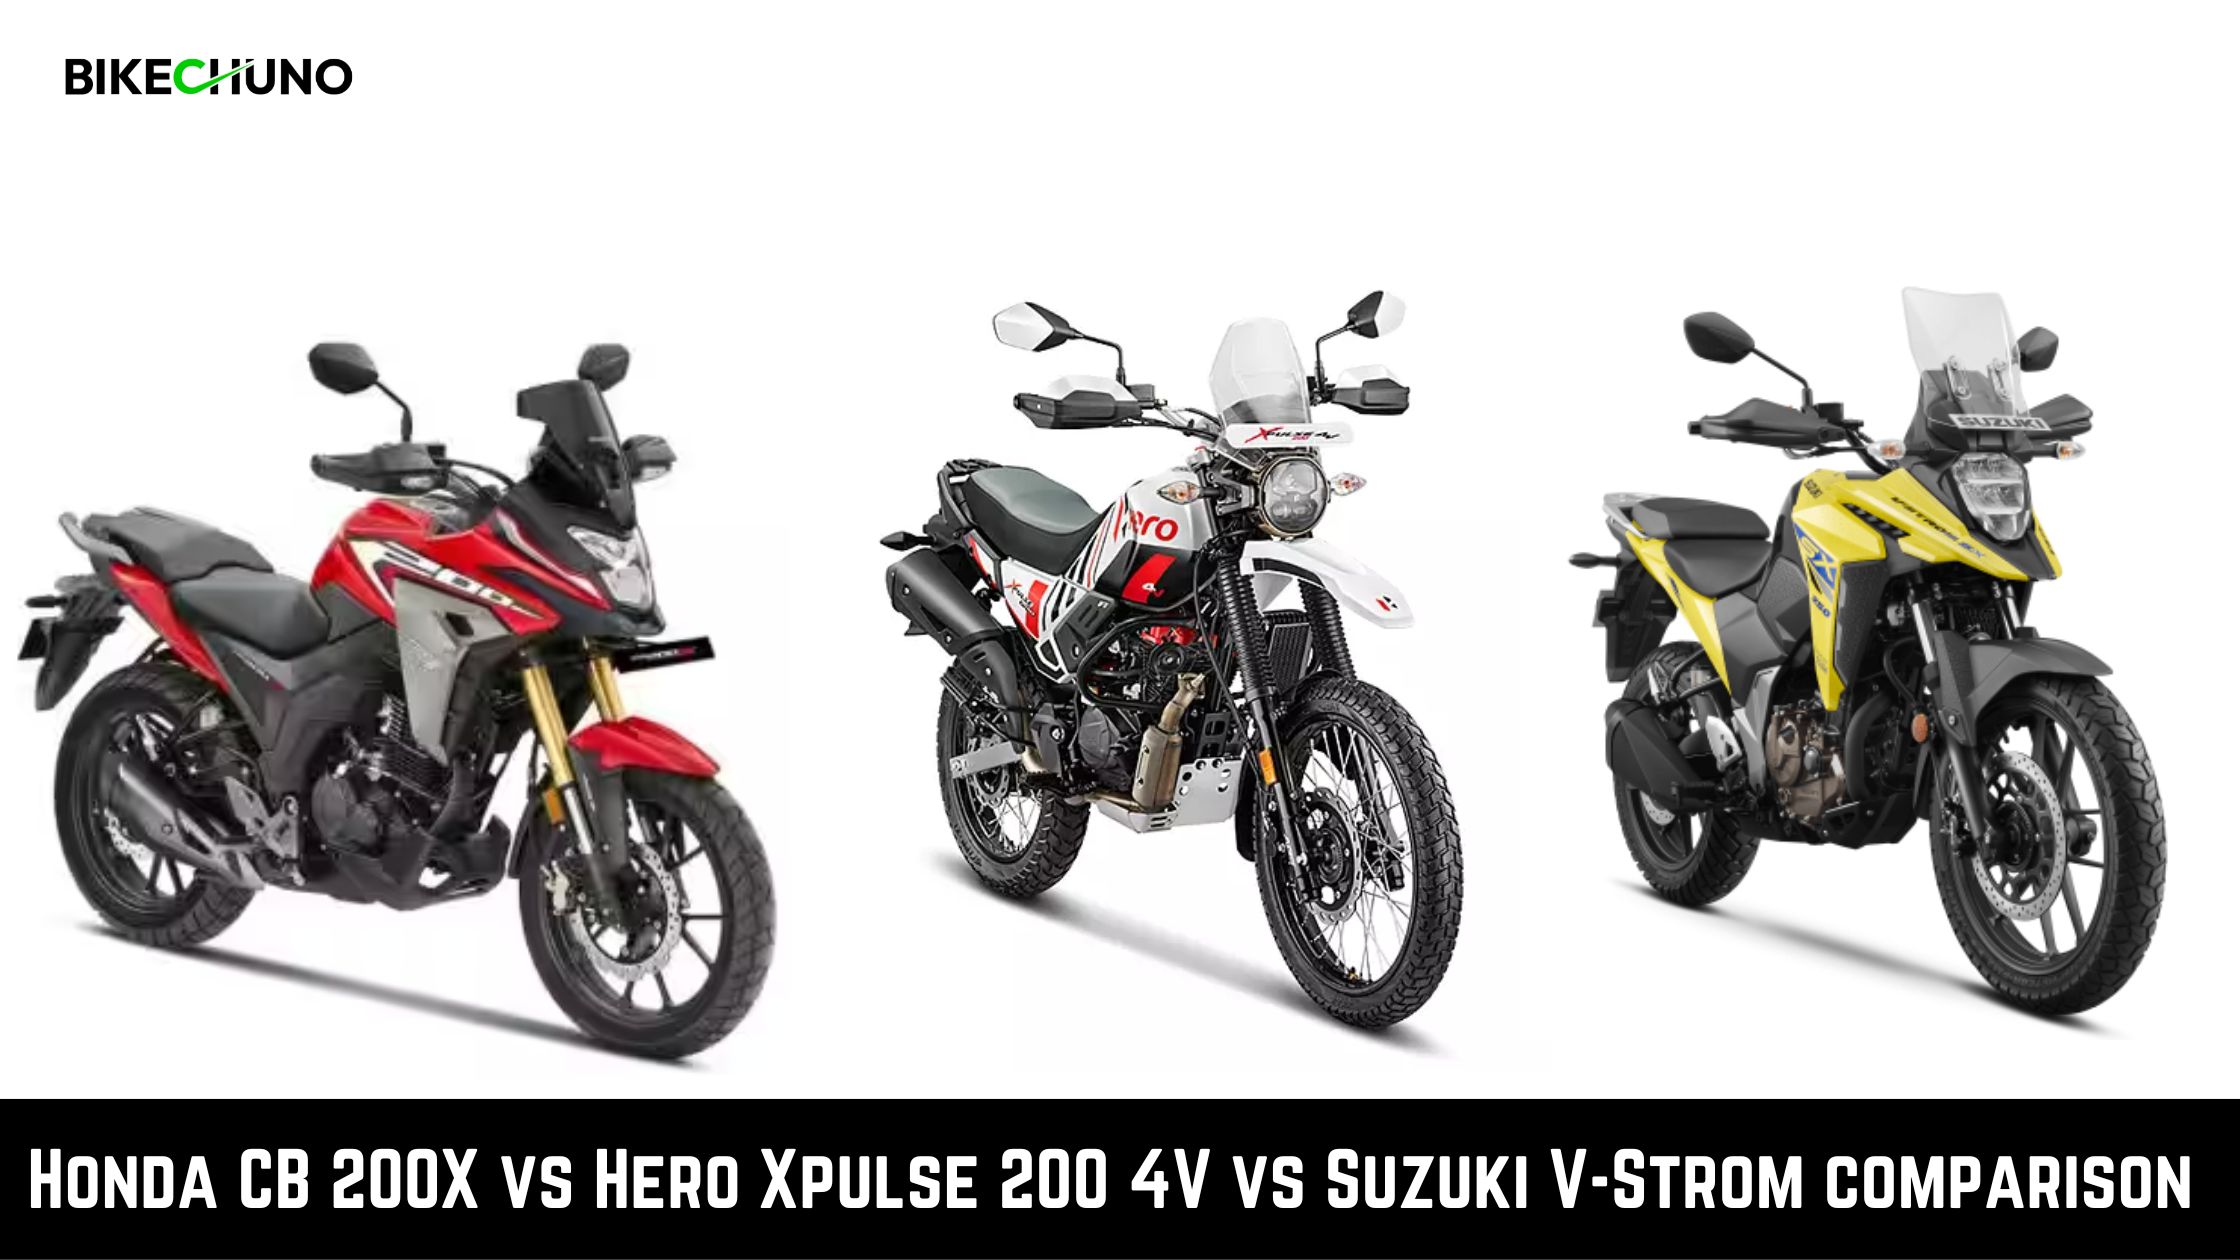 Honda CB 200X vs Hero Xpulse 200 4V vs Suzuki V-Strom comparison